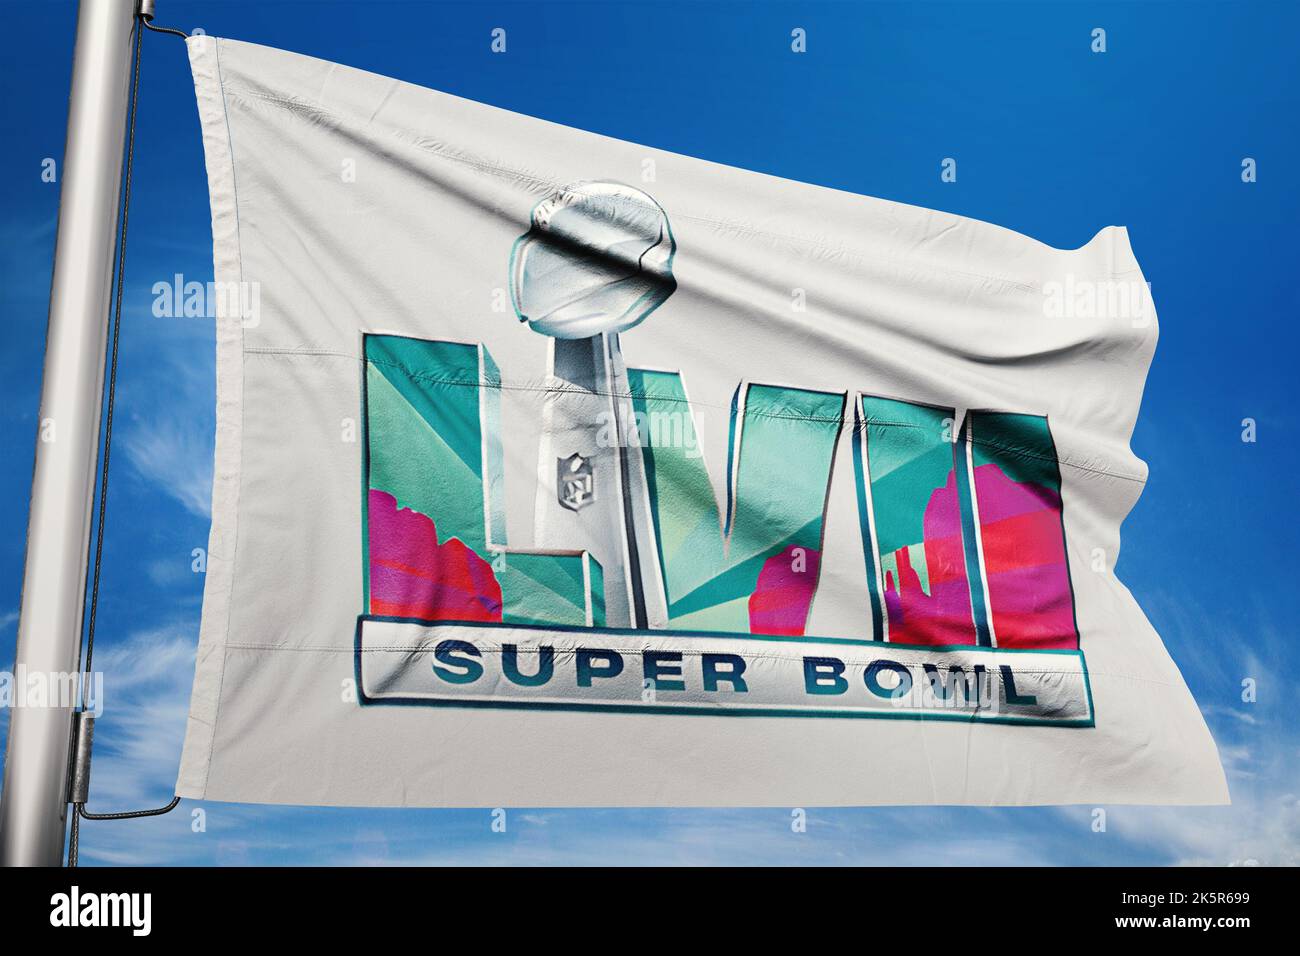 Illustrazione per il prossimo super Bowl lvii evento 2023 campionato nazionale di calcio, Foto Stock